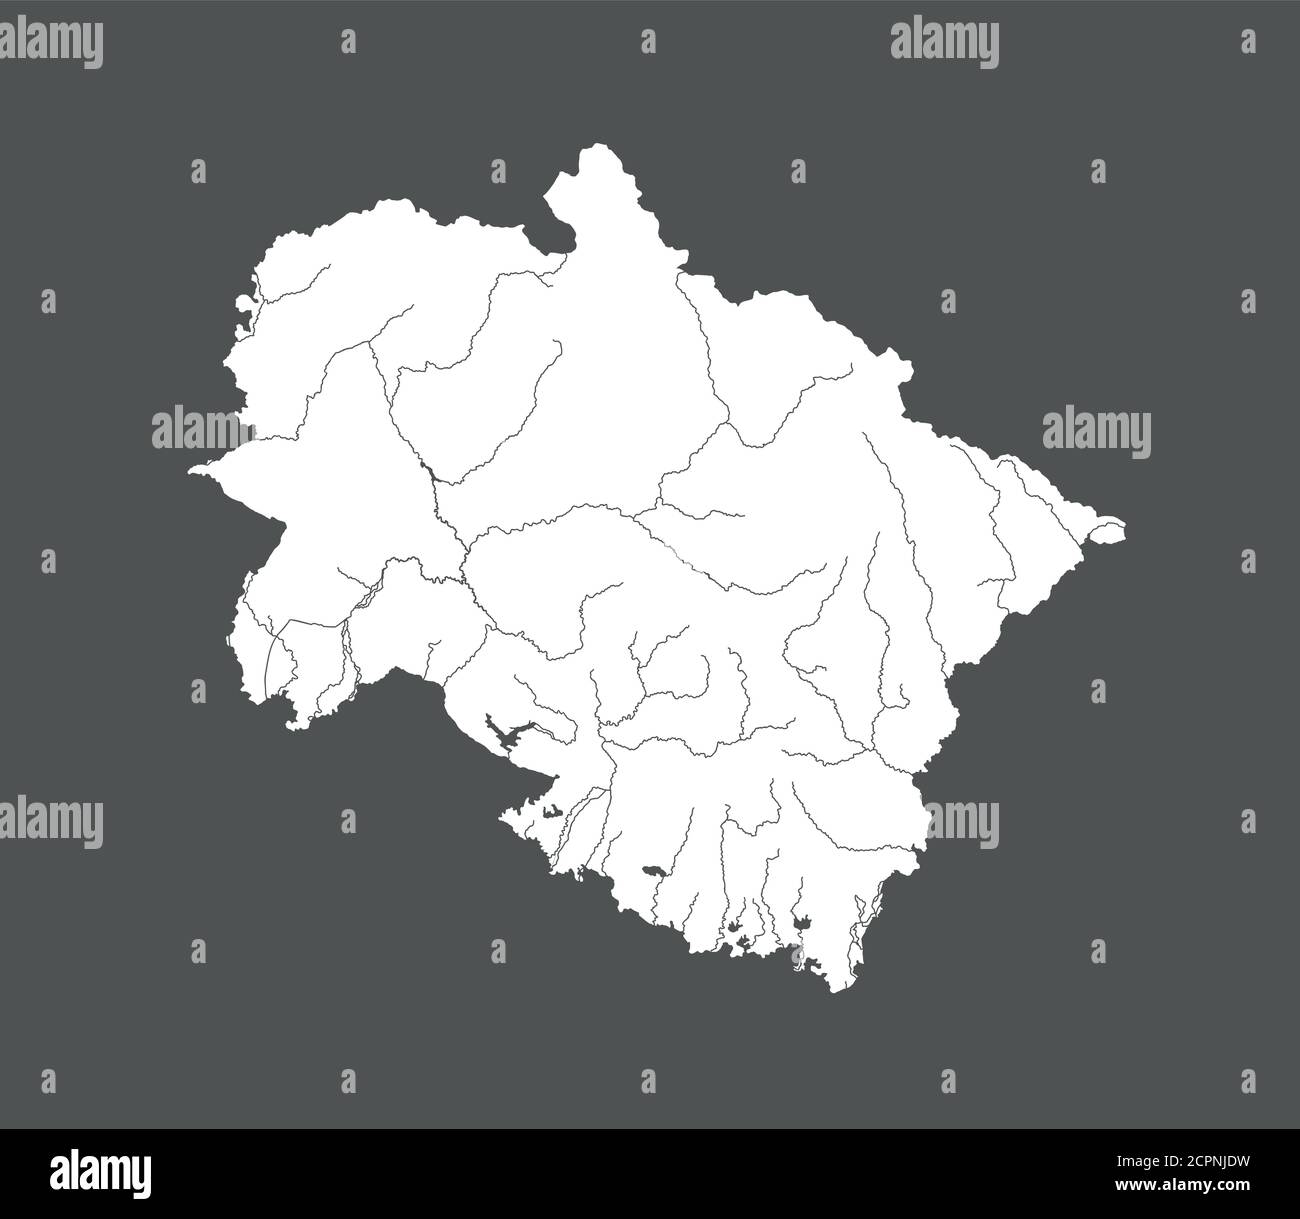 Indien Staaten - Karte von Uttarakhand. Handgemacht. Flüsse und Seen werden angezeigt. Bitte schauen Sie sich meine anderen Bilder von kartografischen Serien an - sie sind alle sehr de Stock Vektor